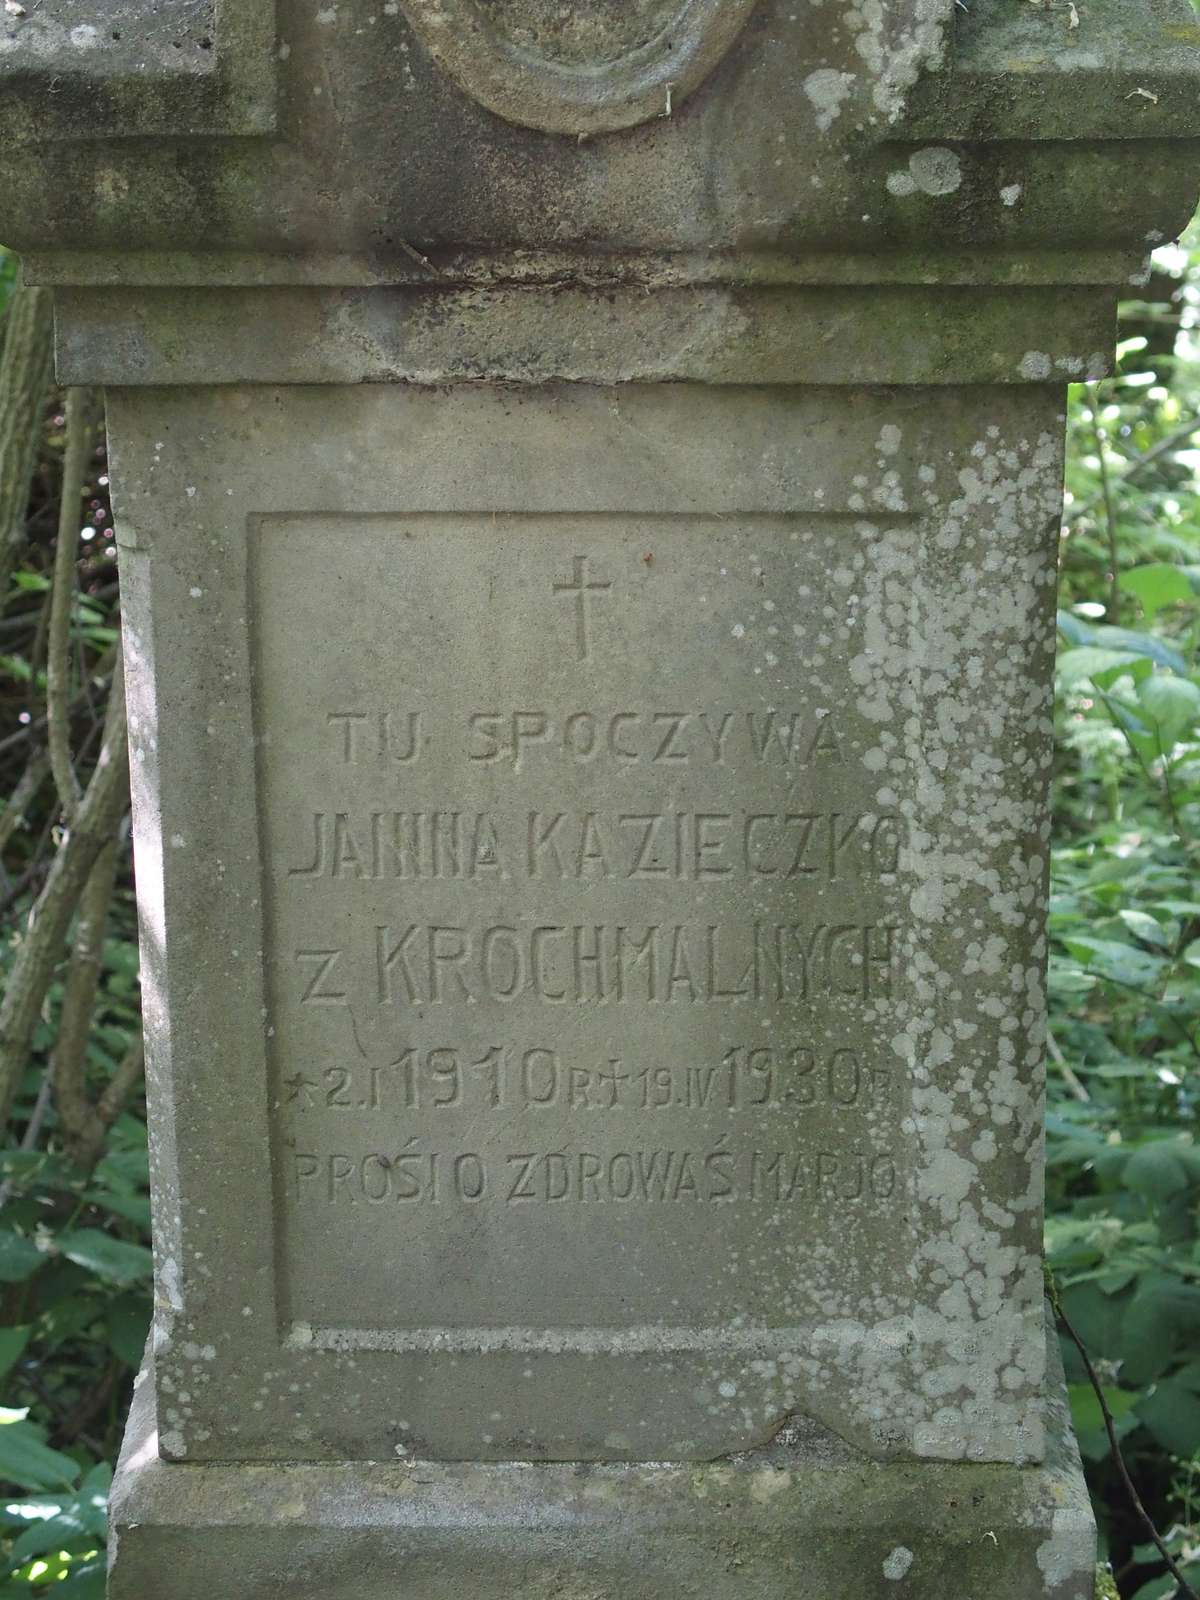 Tombstone of Janina Kazieczko, cemetery in Poczapińce